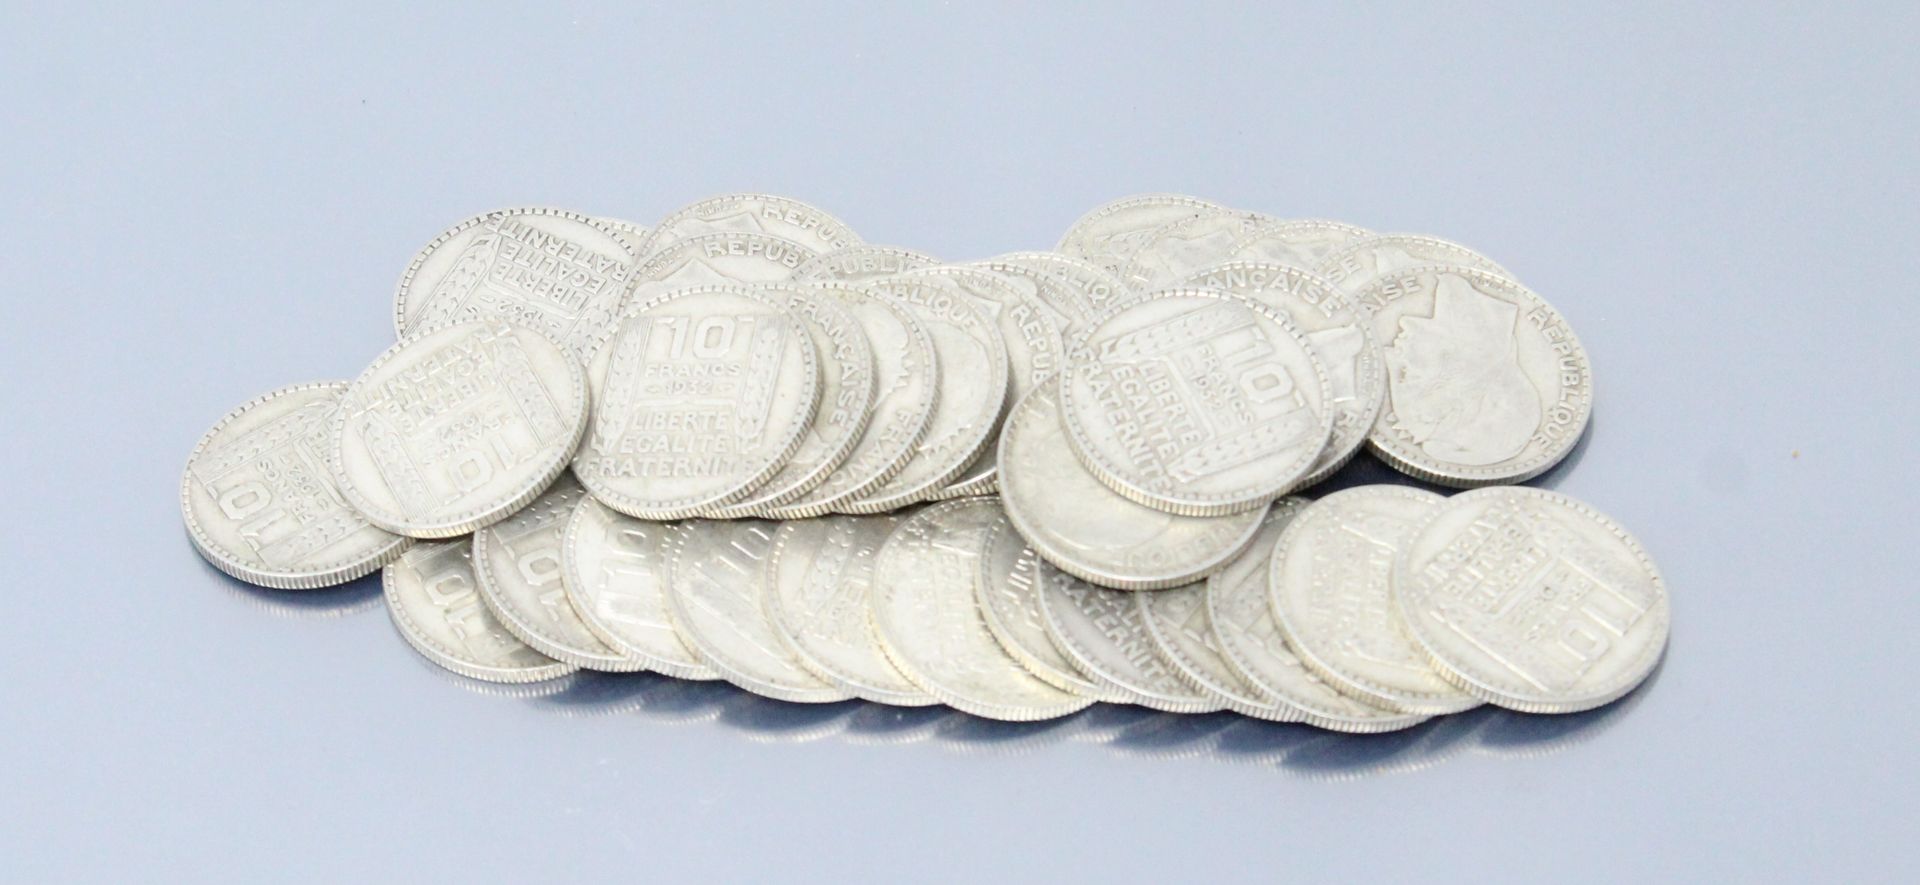 Null 10法郎 "都灵 "型银币，不同年份。



重量：350克。